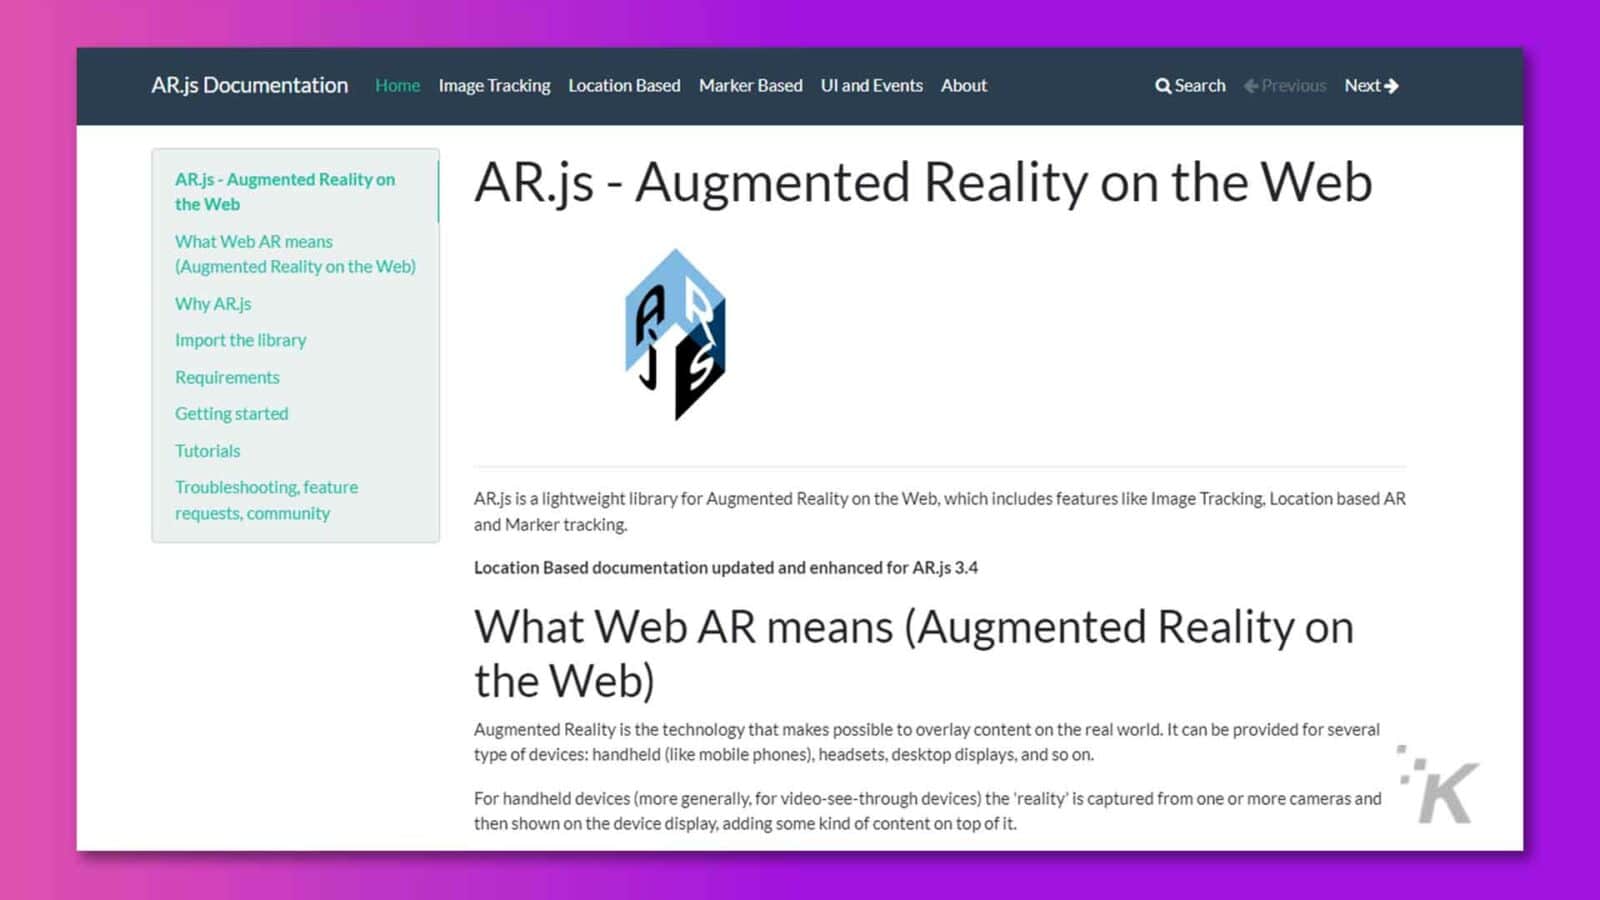 تُظهر هذه الصورة الصفحة الرئيسية لوثائق AR.js ، والتي توفر معلومات حول المكتبة والبرامج التعليمية واستكشاف الأخطاء وإصلاحها للواقع المعزز على الويب. النص الكامل: توثيق AR.js الصفحة الرئيسية تعقب الصور المعتمدة على موقع Ul والأحداث حول Q بحث ‹السابق التالي› AR.js - الواقع المعزز على AR.js - الواقع المعزز على الويب الويب ماذا يعني الواقع المعزز على الويب (الواقع المعزز على الويب) لماذا AR.js A استيراد متطلبات المكتبة الشروع في العمل البرامج التعليمية استكشاف الأخطاء وإصلاحها وطلبات الميزات والمجتمع AR.js هي مكتبة خفيفة الوزن للواقع المعزز على الويب ، والتي تتضمن ميزات مثل تتبع الصور والواقع المعزز على أساس الموقع وتتبع العلامات. تم تحديث الوثائق المستندة إلى الموقع وتحسينها لـ AR.js 3.4 معنى الواقع المعزز على الويب (الواقع المعزز على الويب) الواقع المعزز هو التكنولوجيا التي تجعل من الممكن تراكب المحتوى على العالم الحقيقي. يمكن توفيره لعدة أنواع من الأجهزة: الأجهزة المحمولة (مثل الهواتف المحمولة) ، وسماعات الرأس ، وشاشات عرض سطح المكتب ، وما إلى ذلك. بالنسبة للأجهزة المحمولة (بشكل عام ، بالنسبة لأجهزة الفيديو الشفافة) يتم التقاط "الواقع" من كاميرا واحدة أو أكثر ثم يتم عرضها على شاشة الجهاز ، مع إضافة نوع من المحتوى فوقها.